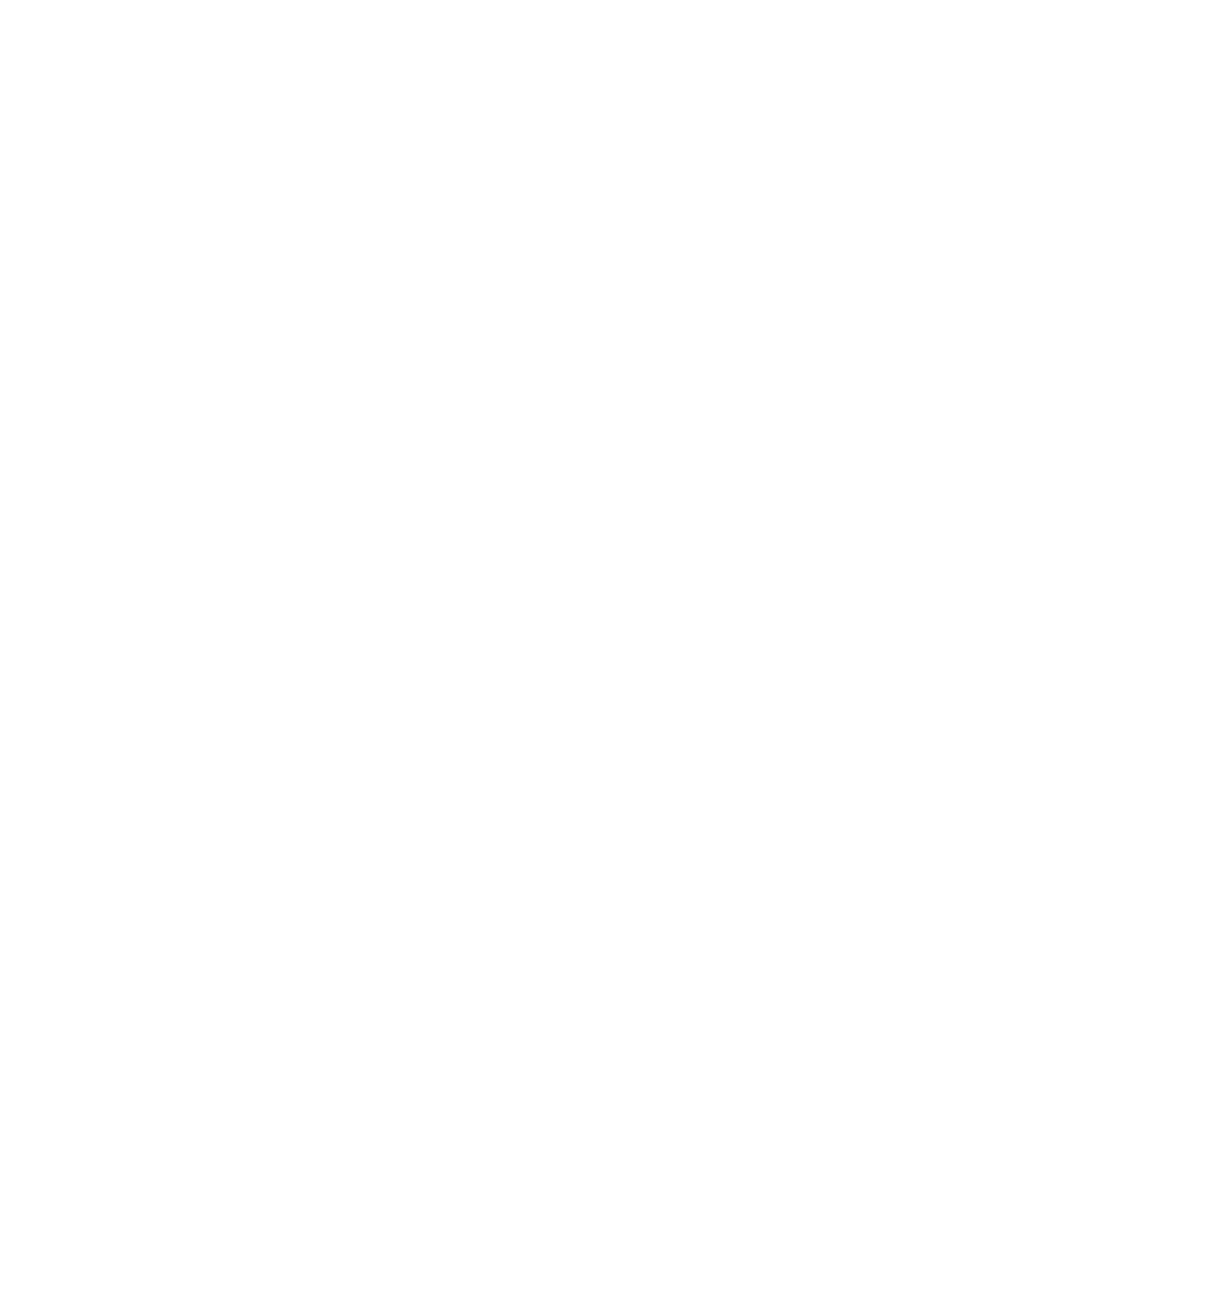 Muslimische Hochschulgemeinde Düsseldorf e. V.